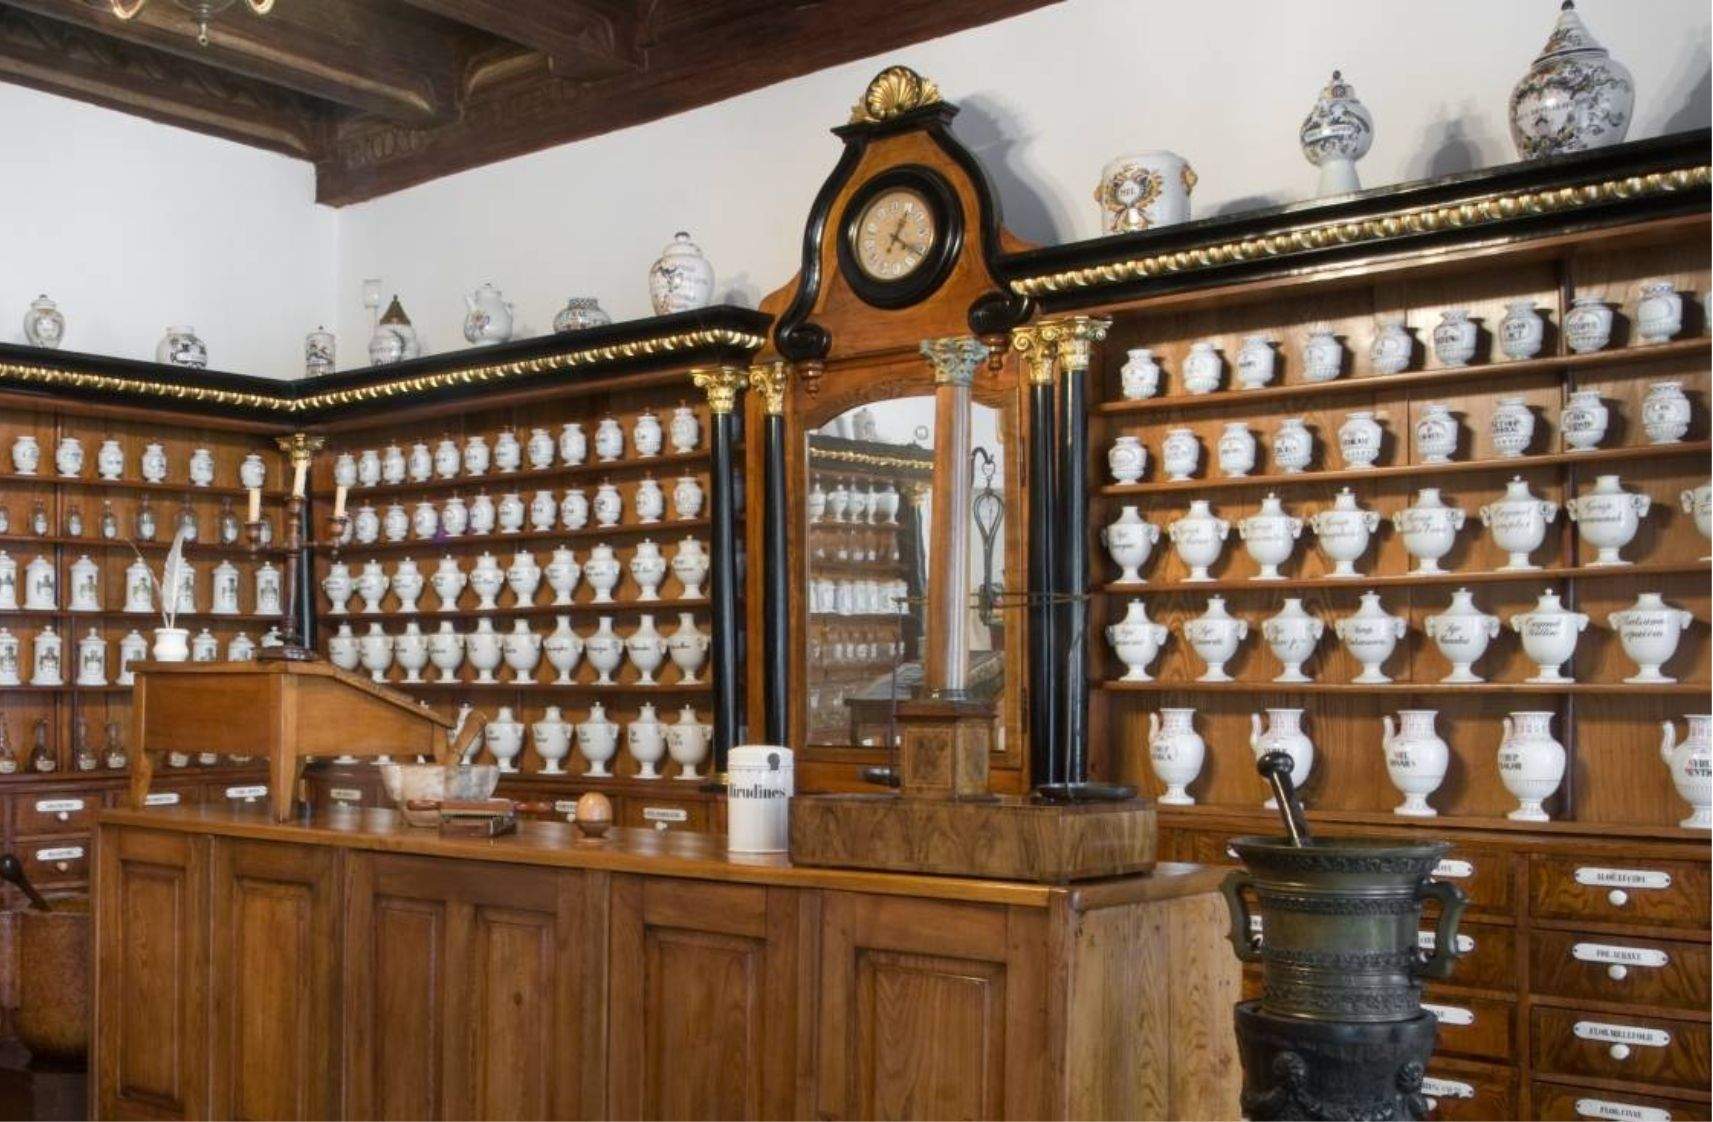  Museum of Pharmacy in Krakow